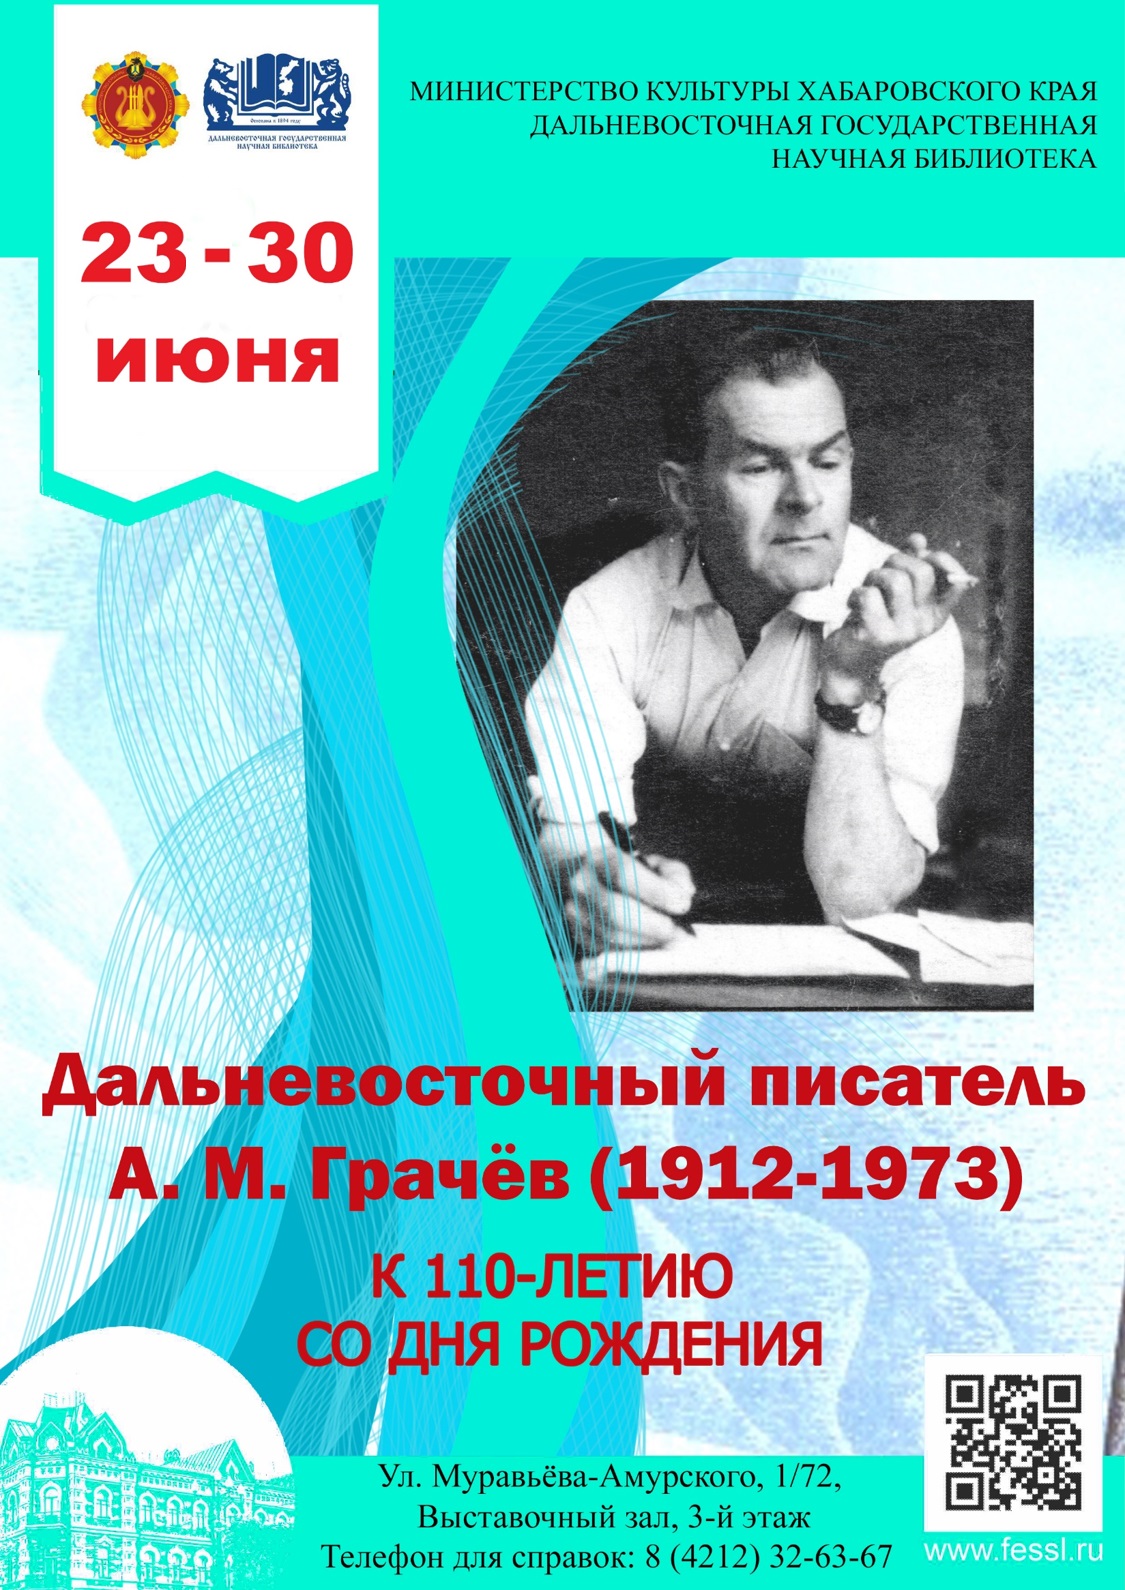 Книжная выставка к 110-летию писателя А. М. Грачева